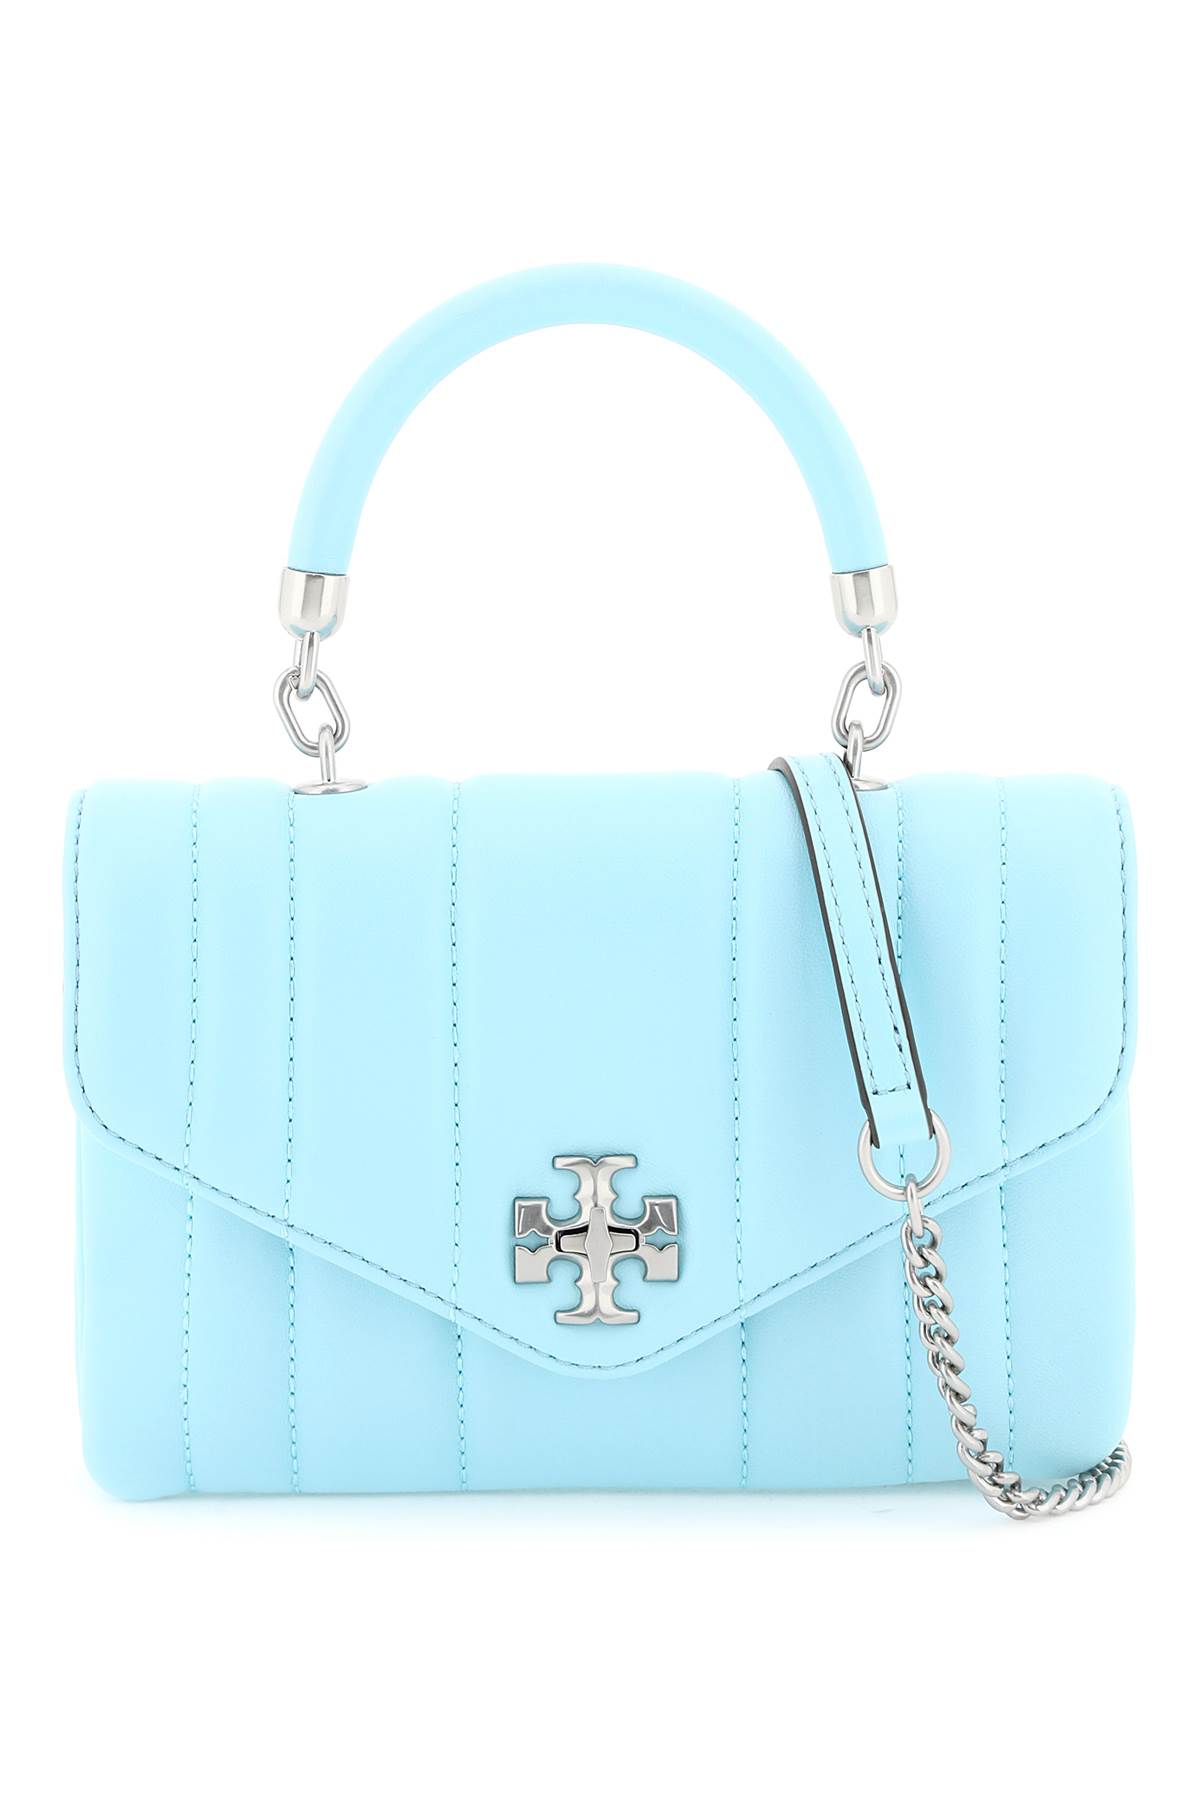 Tory Burch Kira Handbag In Light Celeste (light Blue) | ModeSens